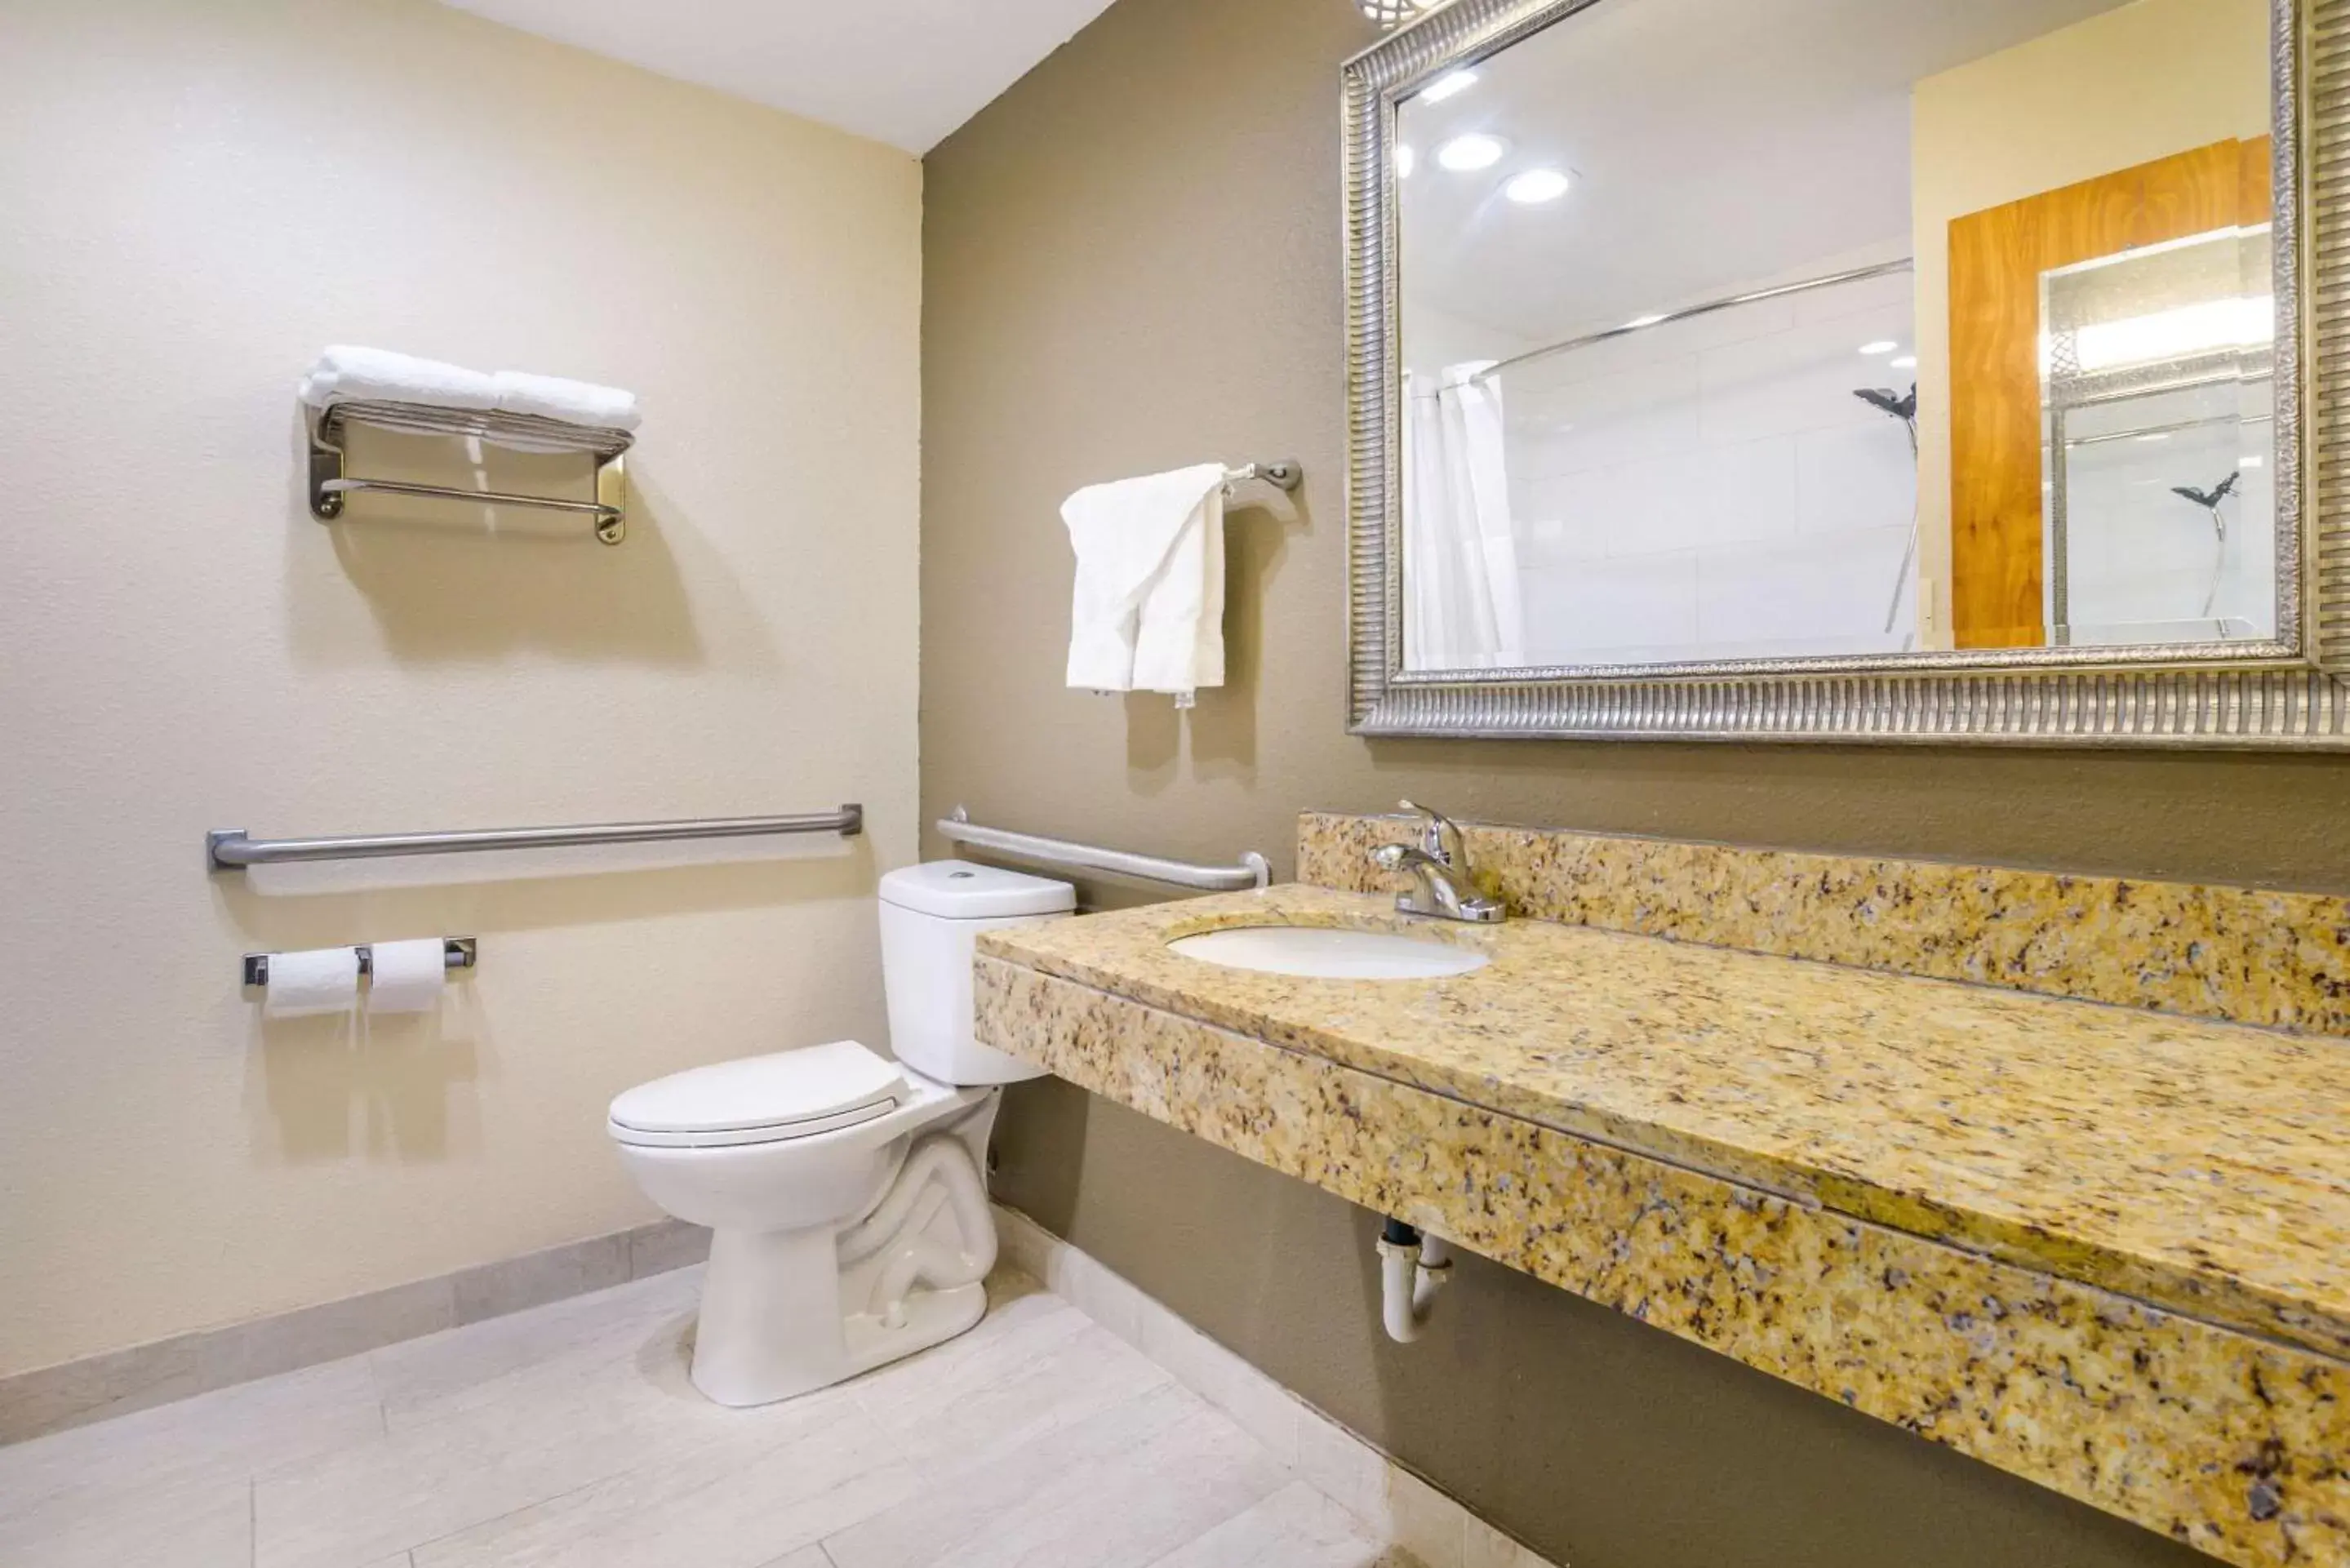 Bathroom in Quality Inn & Suites Florence- Cincinnati South